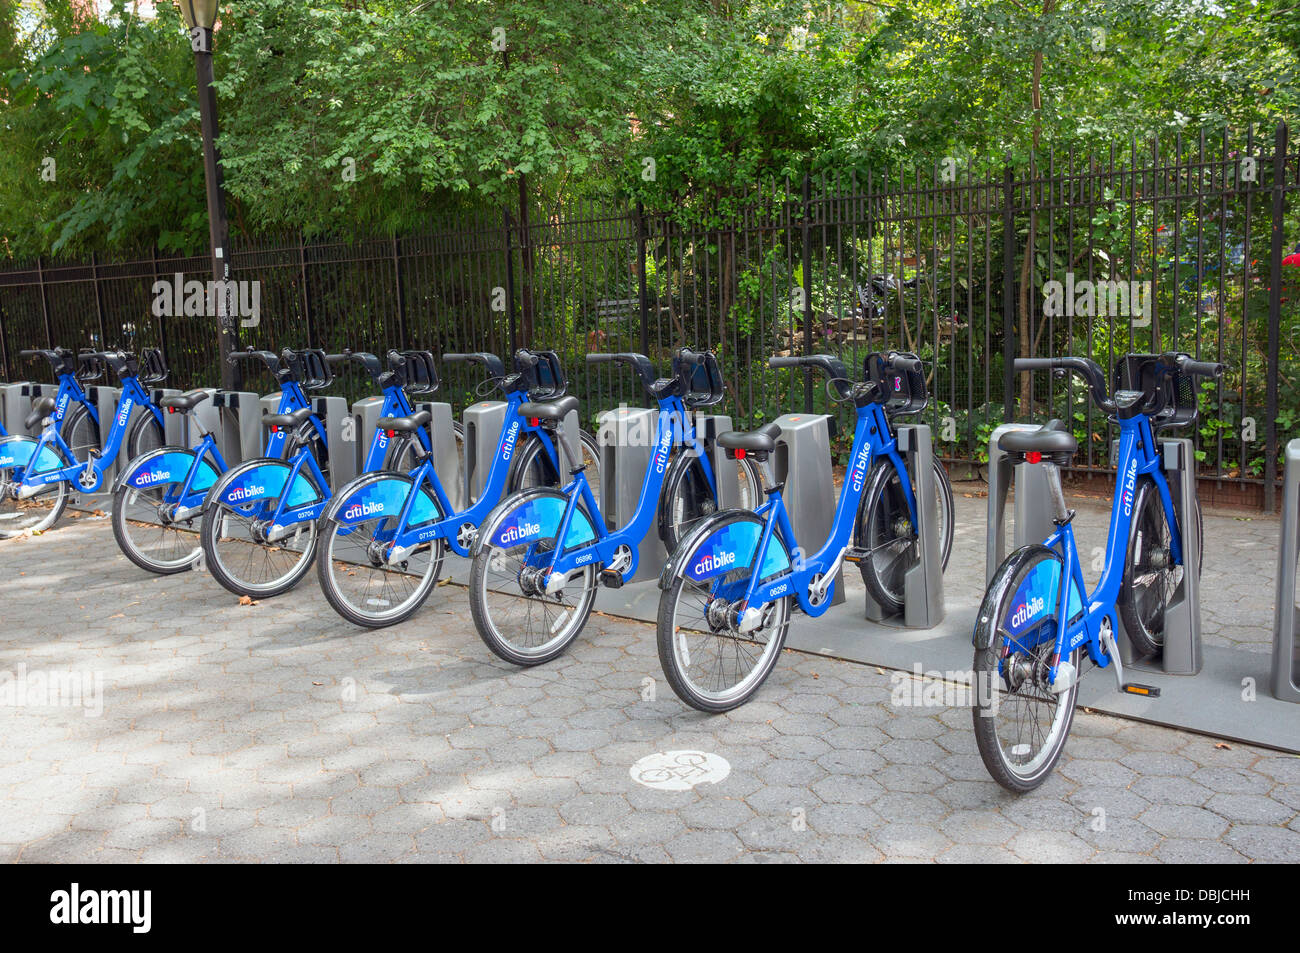 Station de vélo de Citi sur Lower East Side à New York Banque D'Images